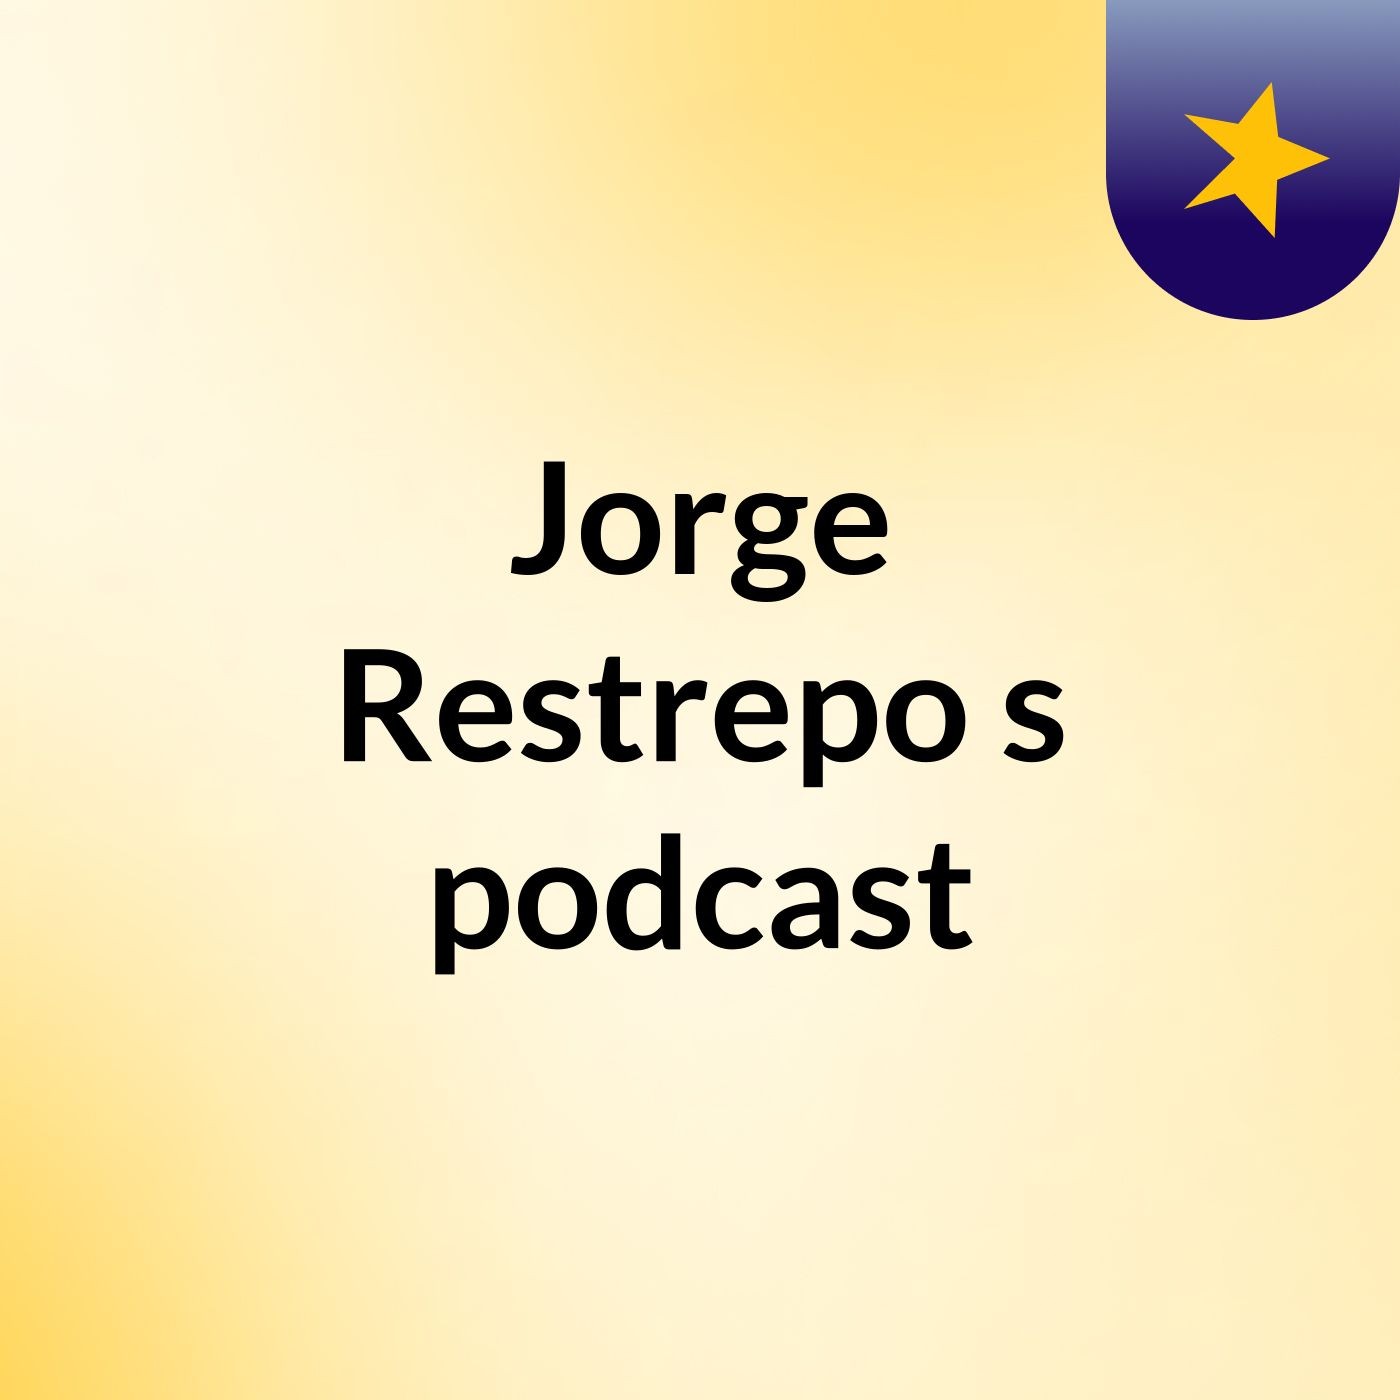 Jorge Restrepo's podcast